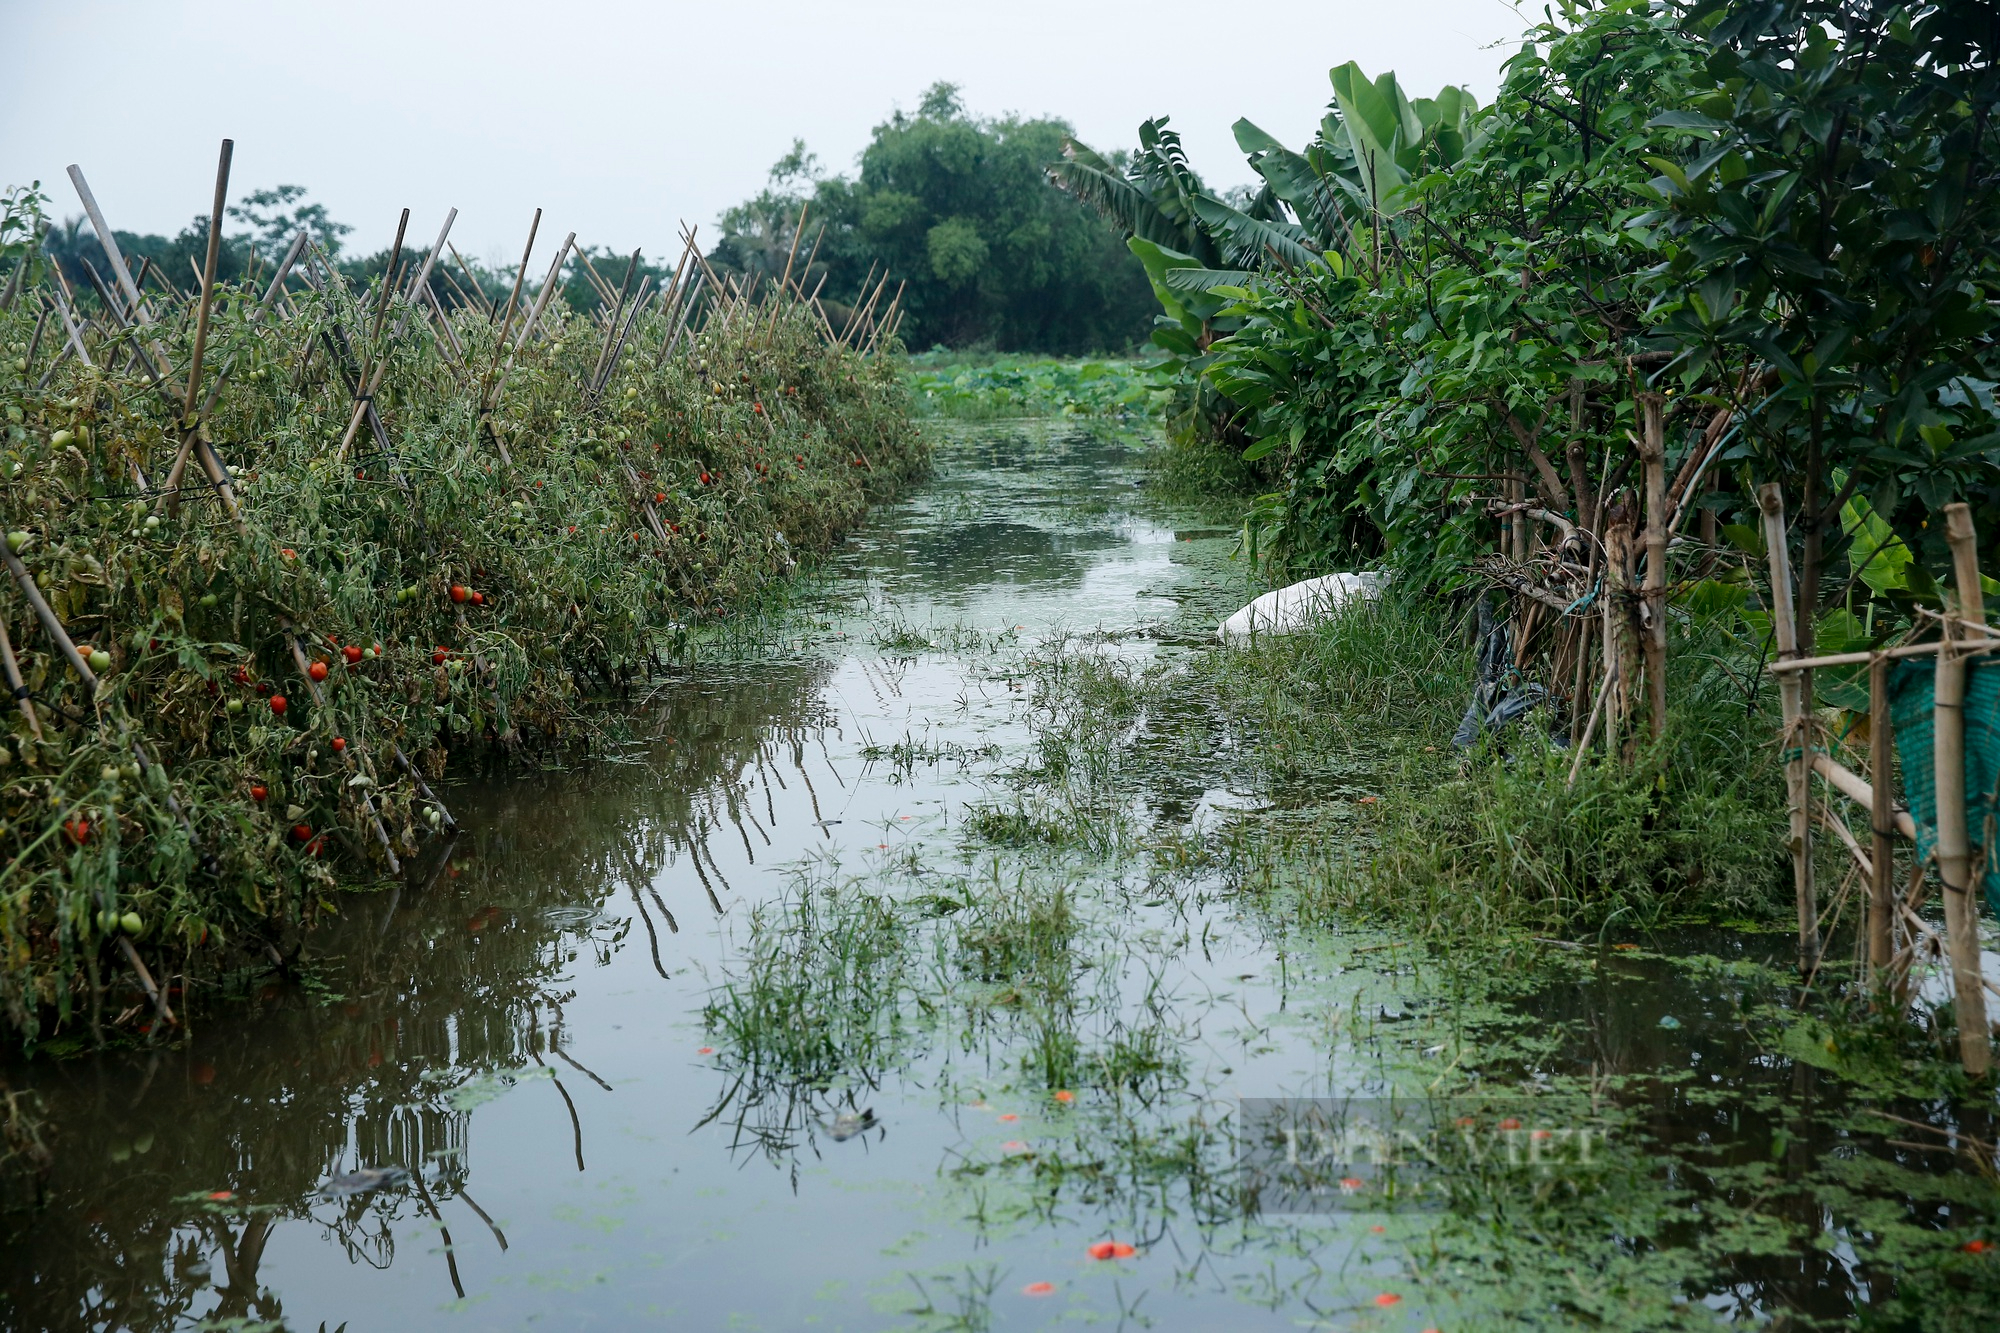 Nông dân ngoại thành Hà Nội khốn khổ vì nước ngập tàn phá hoa màu 4 ngày không rút - Ảnh 2.